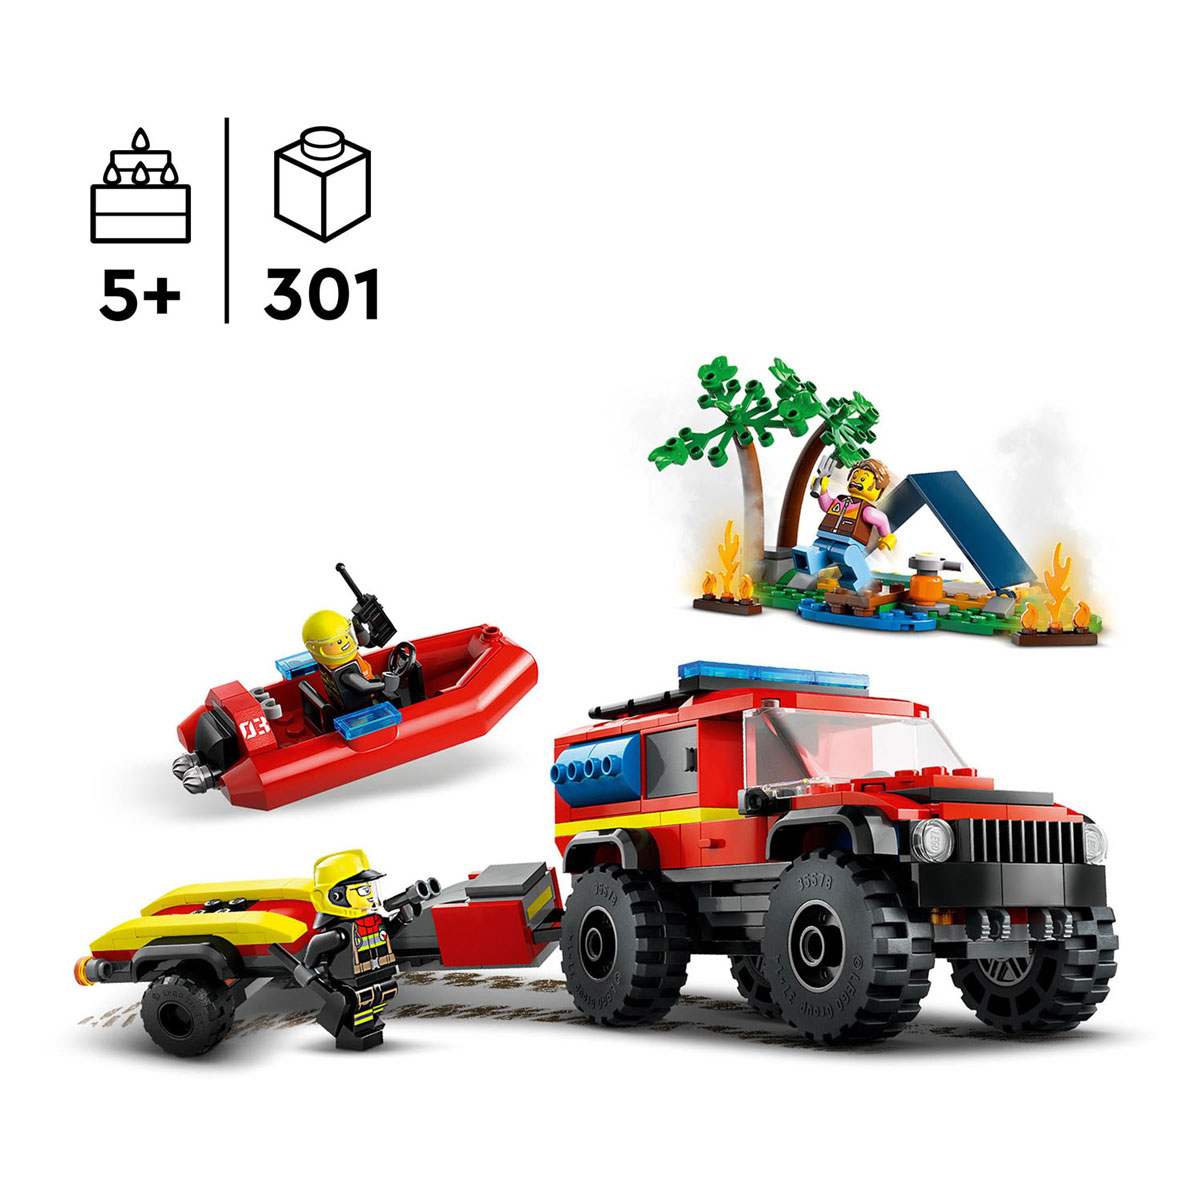 LEGO City 60412 4X4 Brandweerauto met Reddingsboot